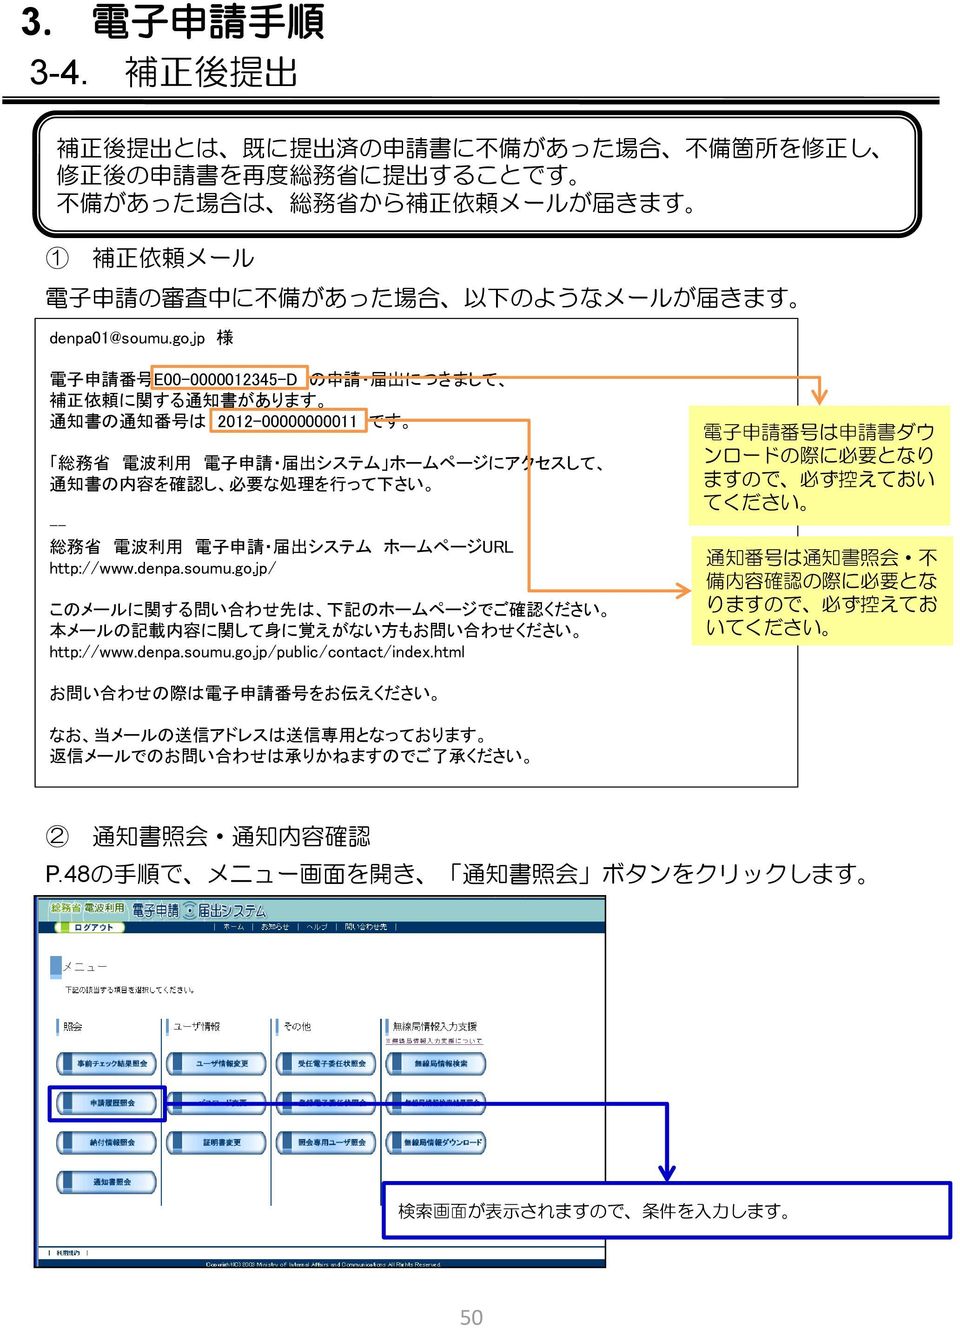 jp 様 電 子 申 請 番 号 E00-0000012345-D の 申 請 届 出 につきまして 補 正 依 頼 に 関 する 通 知 書 があります 通 知 書 の 通 知 番 号 は 2012-00000000011 です 総 務 省 電 波 利 用 電 子 申 請 届 出 システム ホームページにアクセスして 通 知 書 の 内 容 を 確 認 し 必 要 な 処 理 を 行 って 下